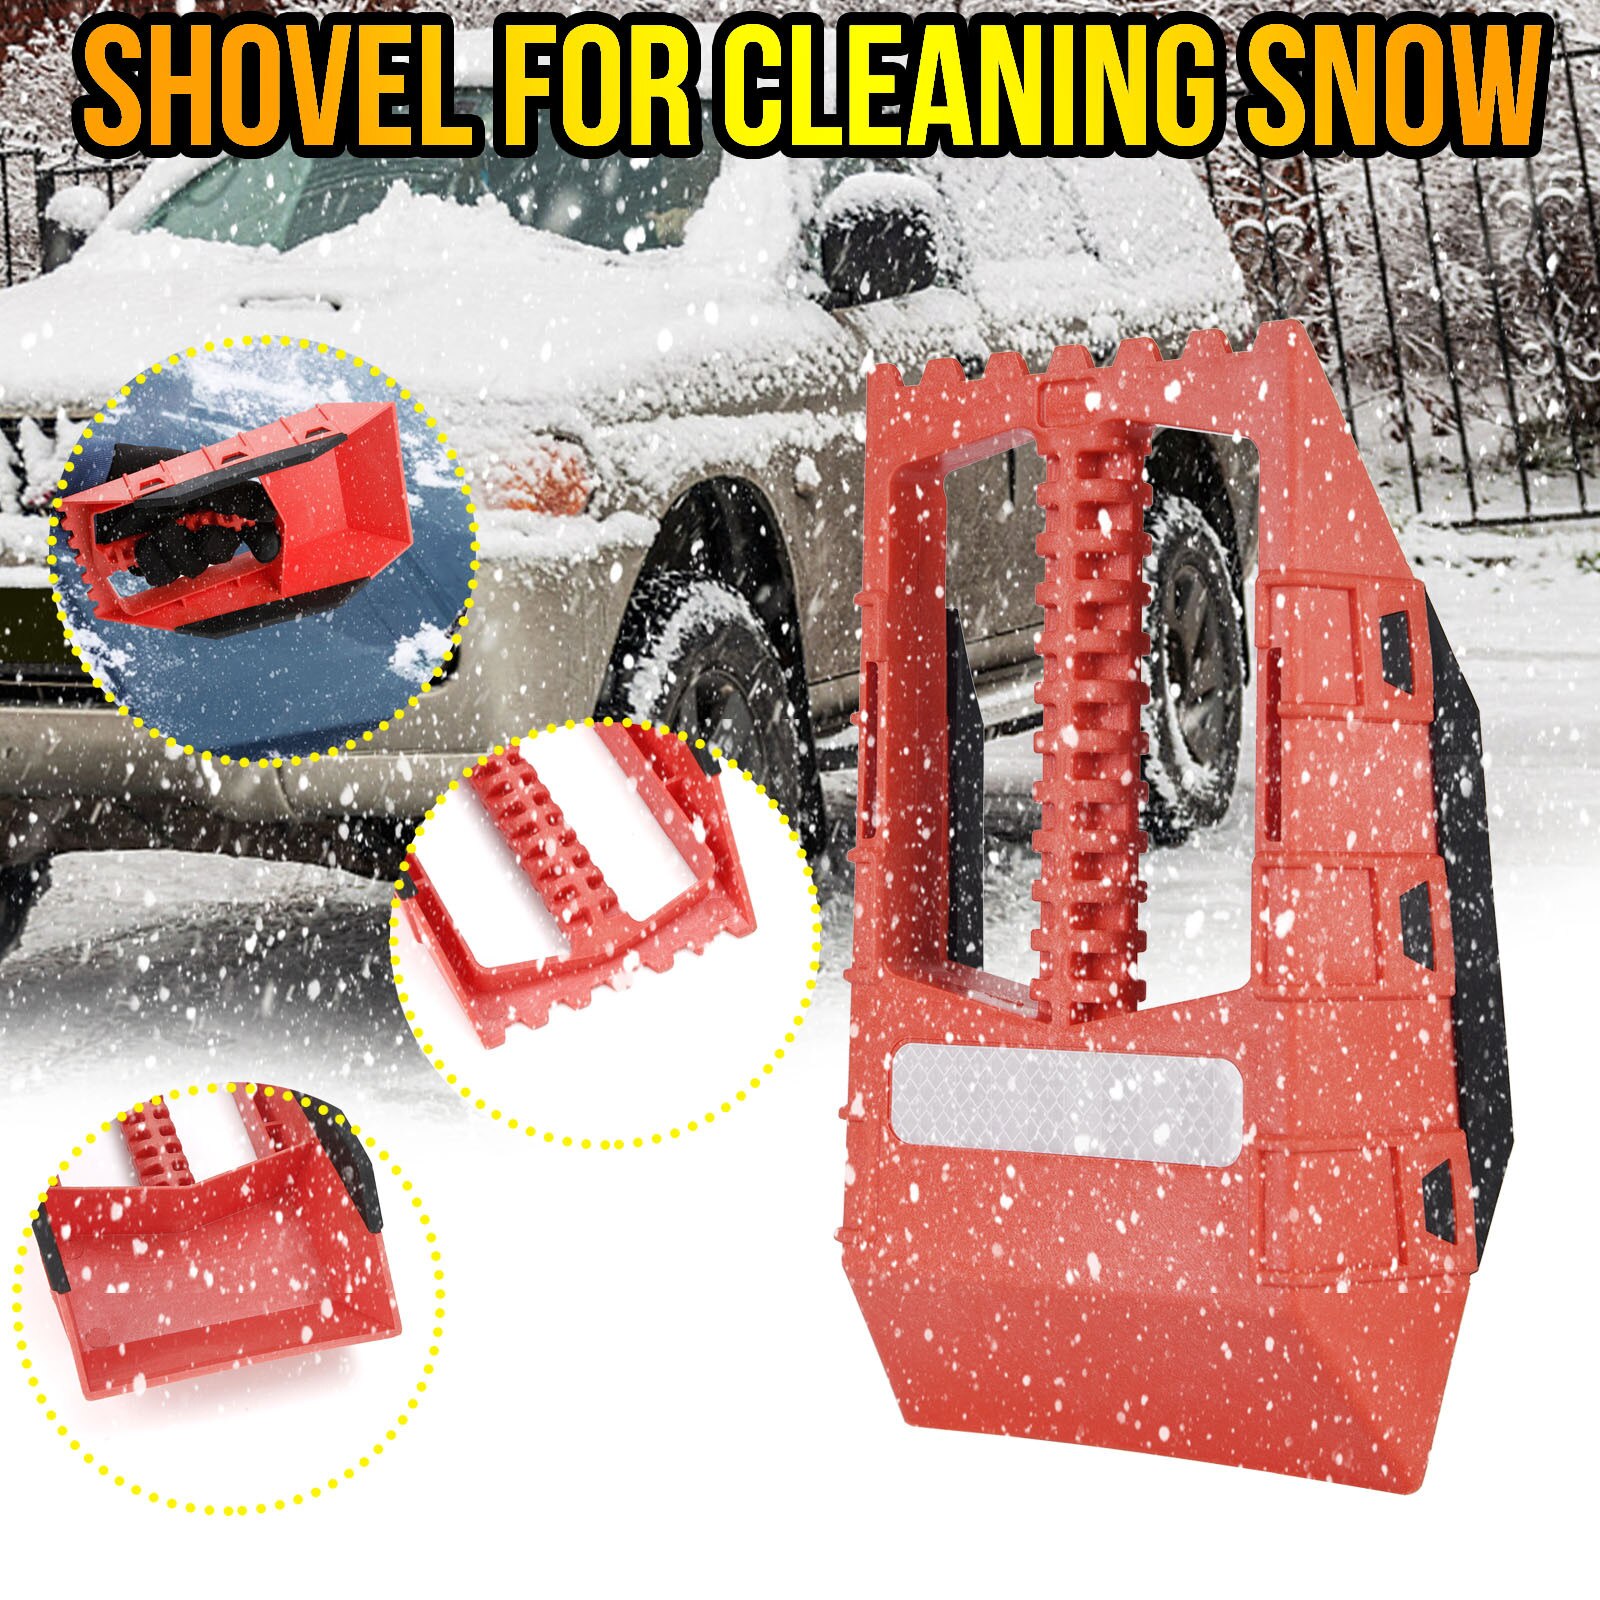 Sneeuw Cleaning Machine Compact Veiligheid Schop 5-In-1 Sneeuw Schop Compacte Auto Size Compact Veiligheid Schop bezem